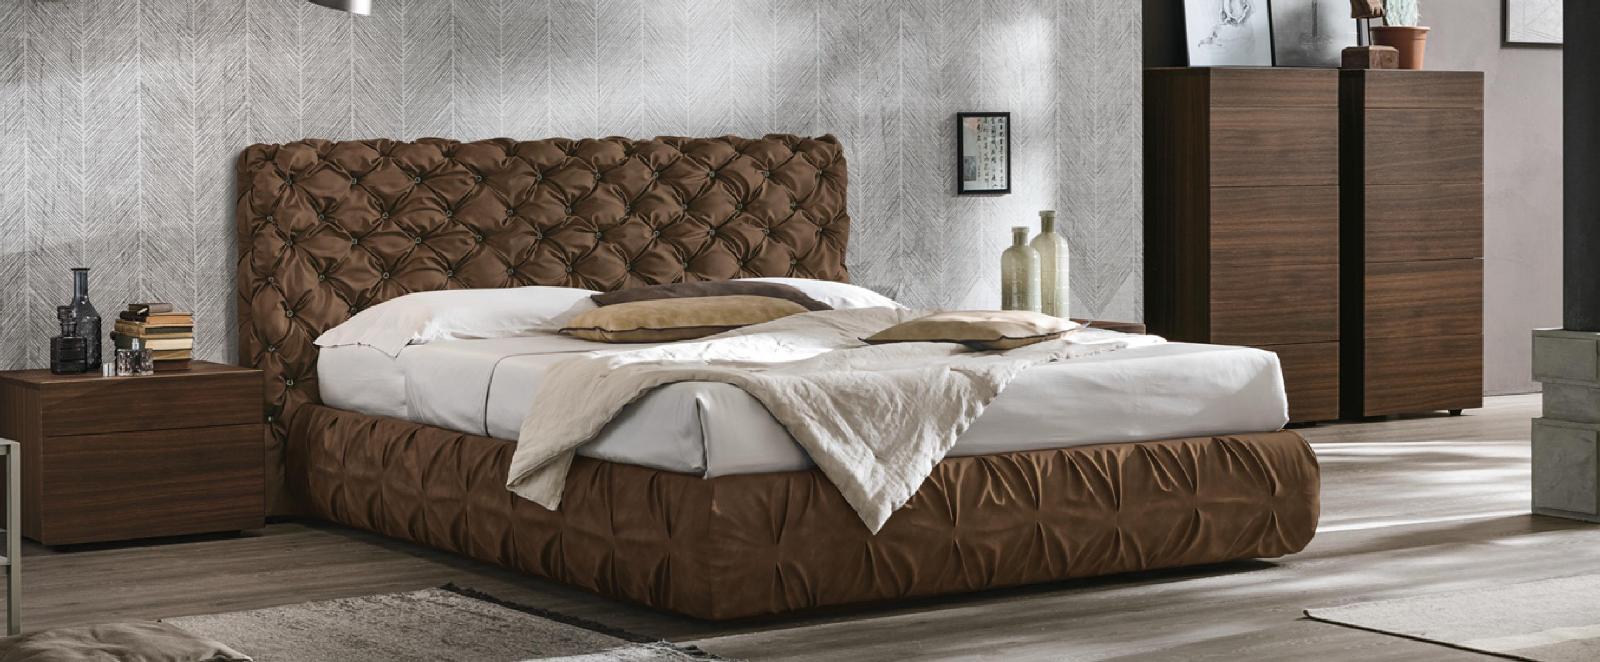 Двуспальные кровати с обивкой: Chantal basso